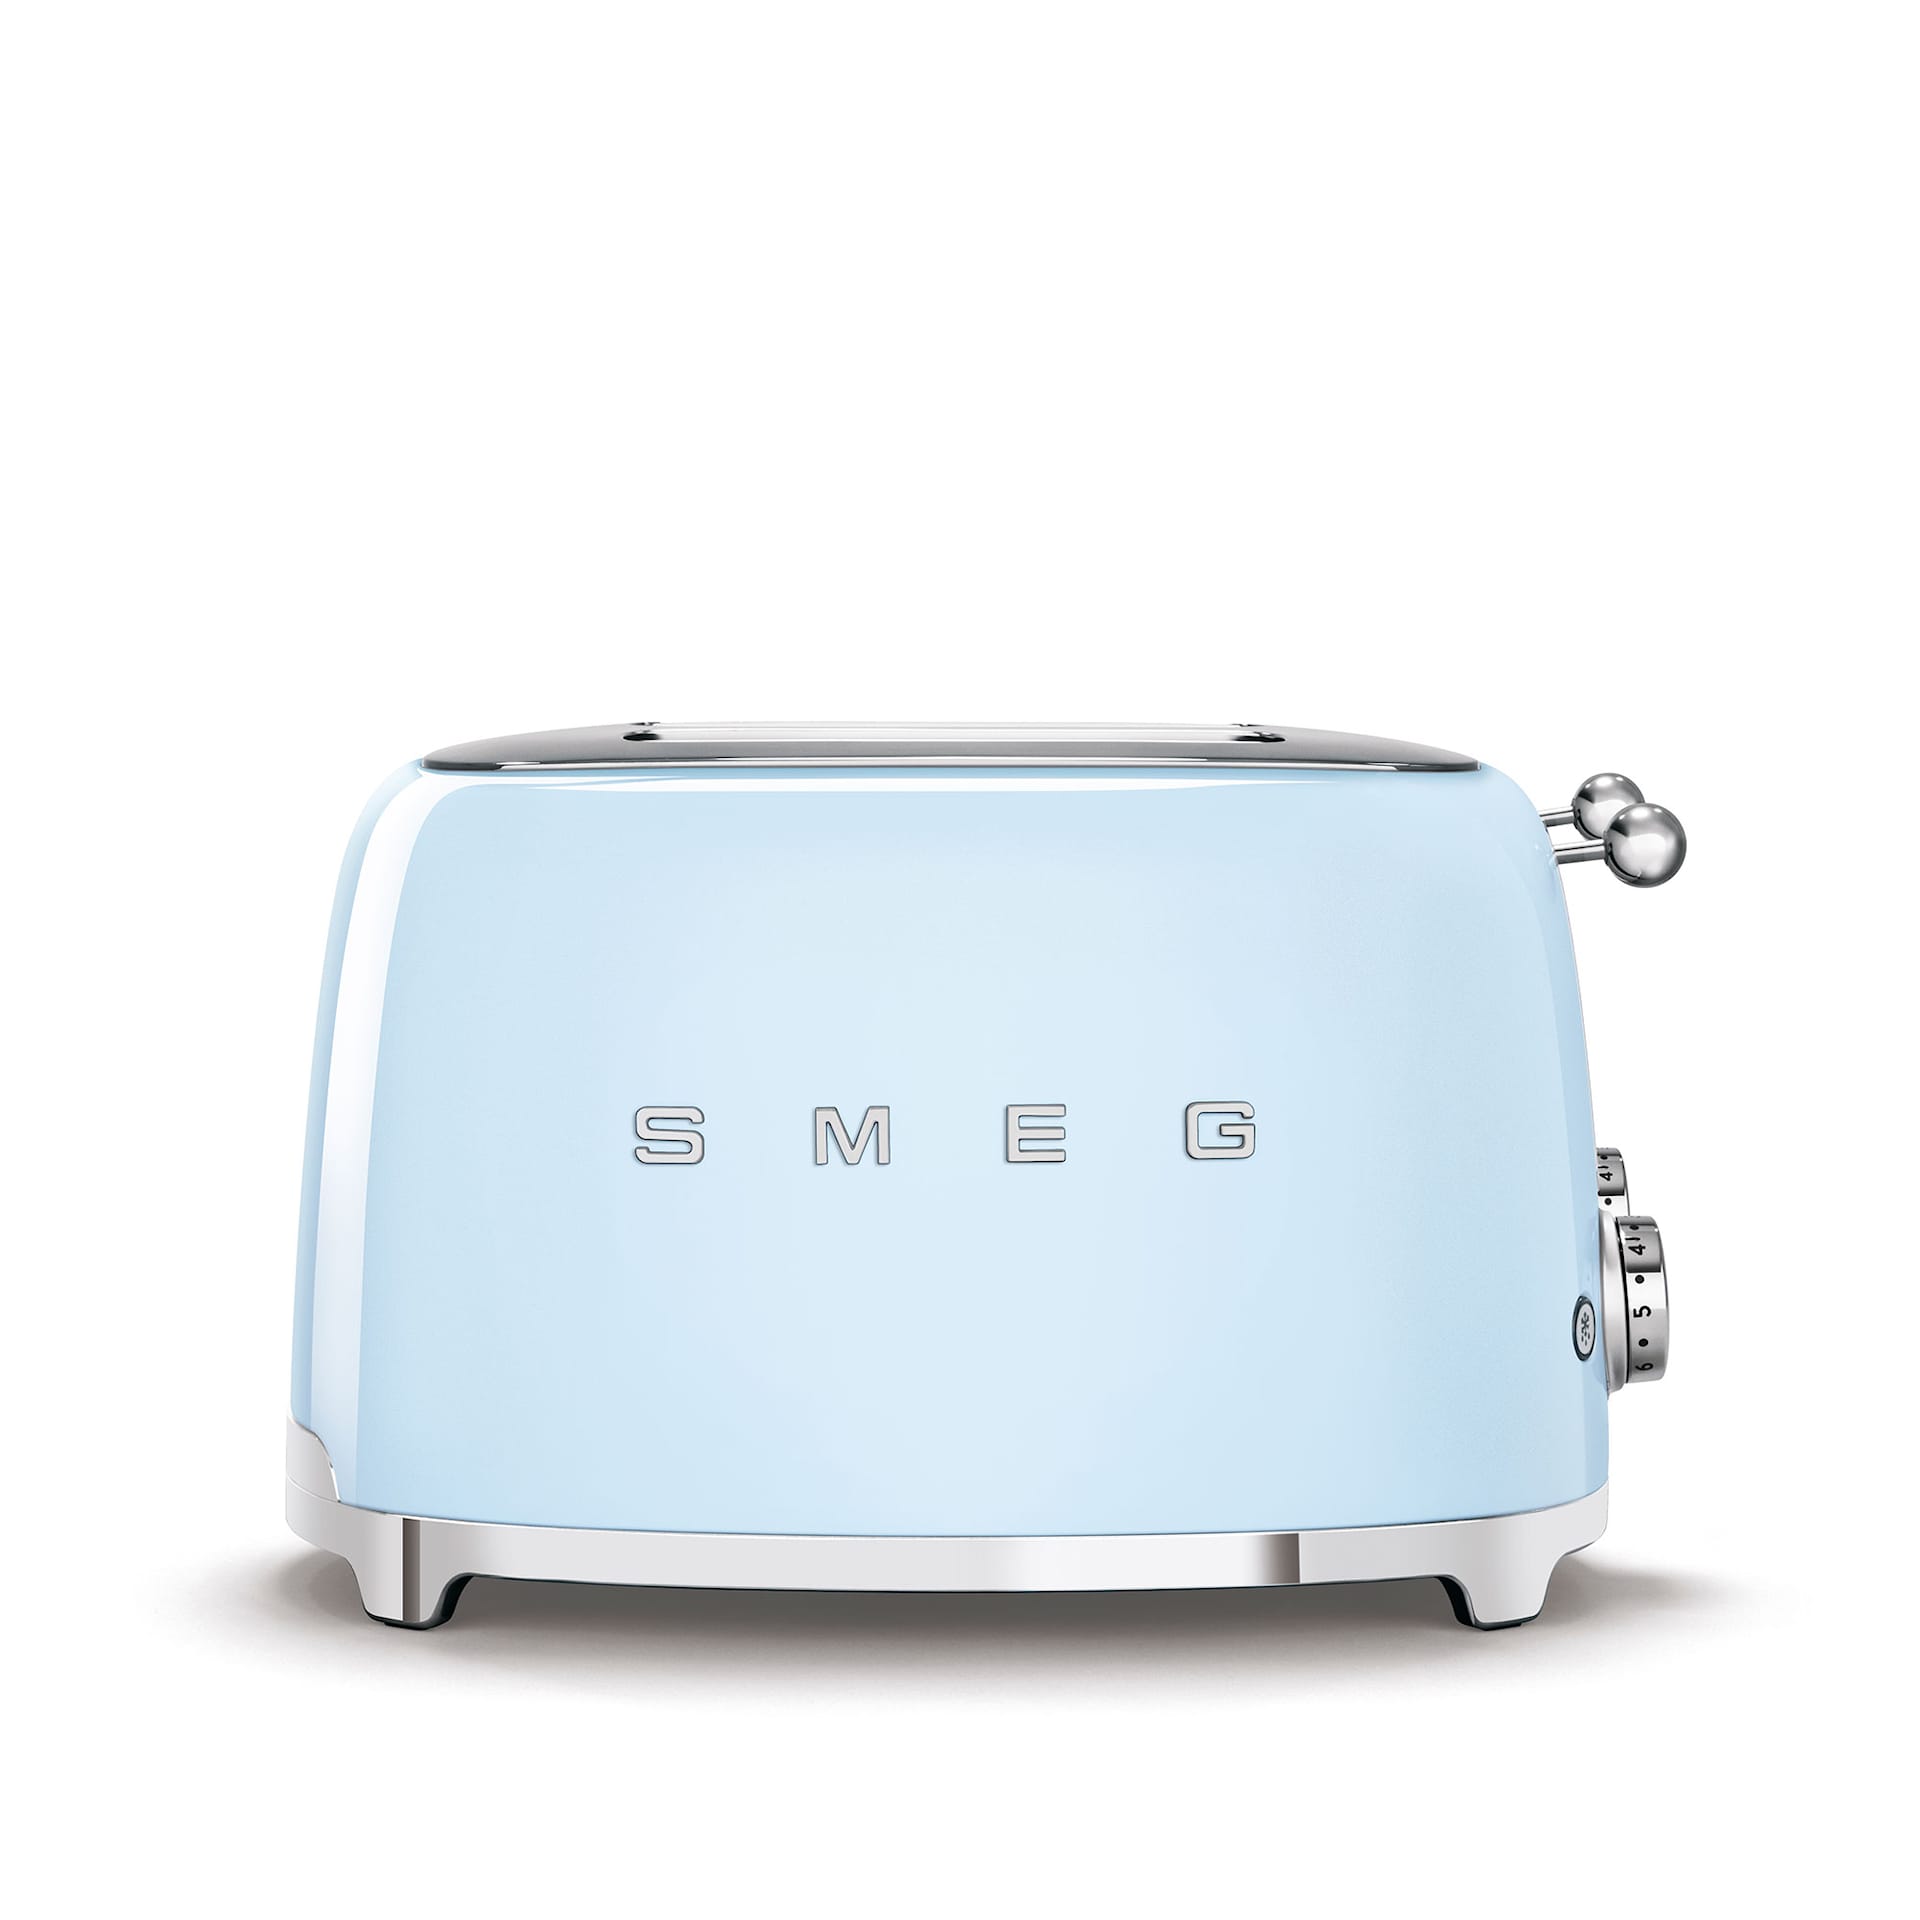 Smeg 4 Slot Toaster Pastel Blue - Smeg - NO GA